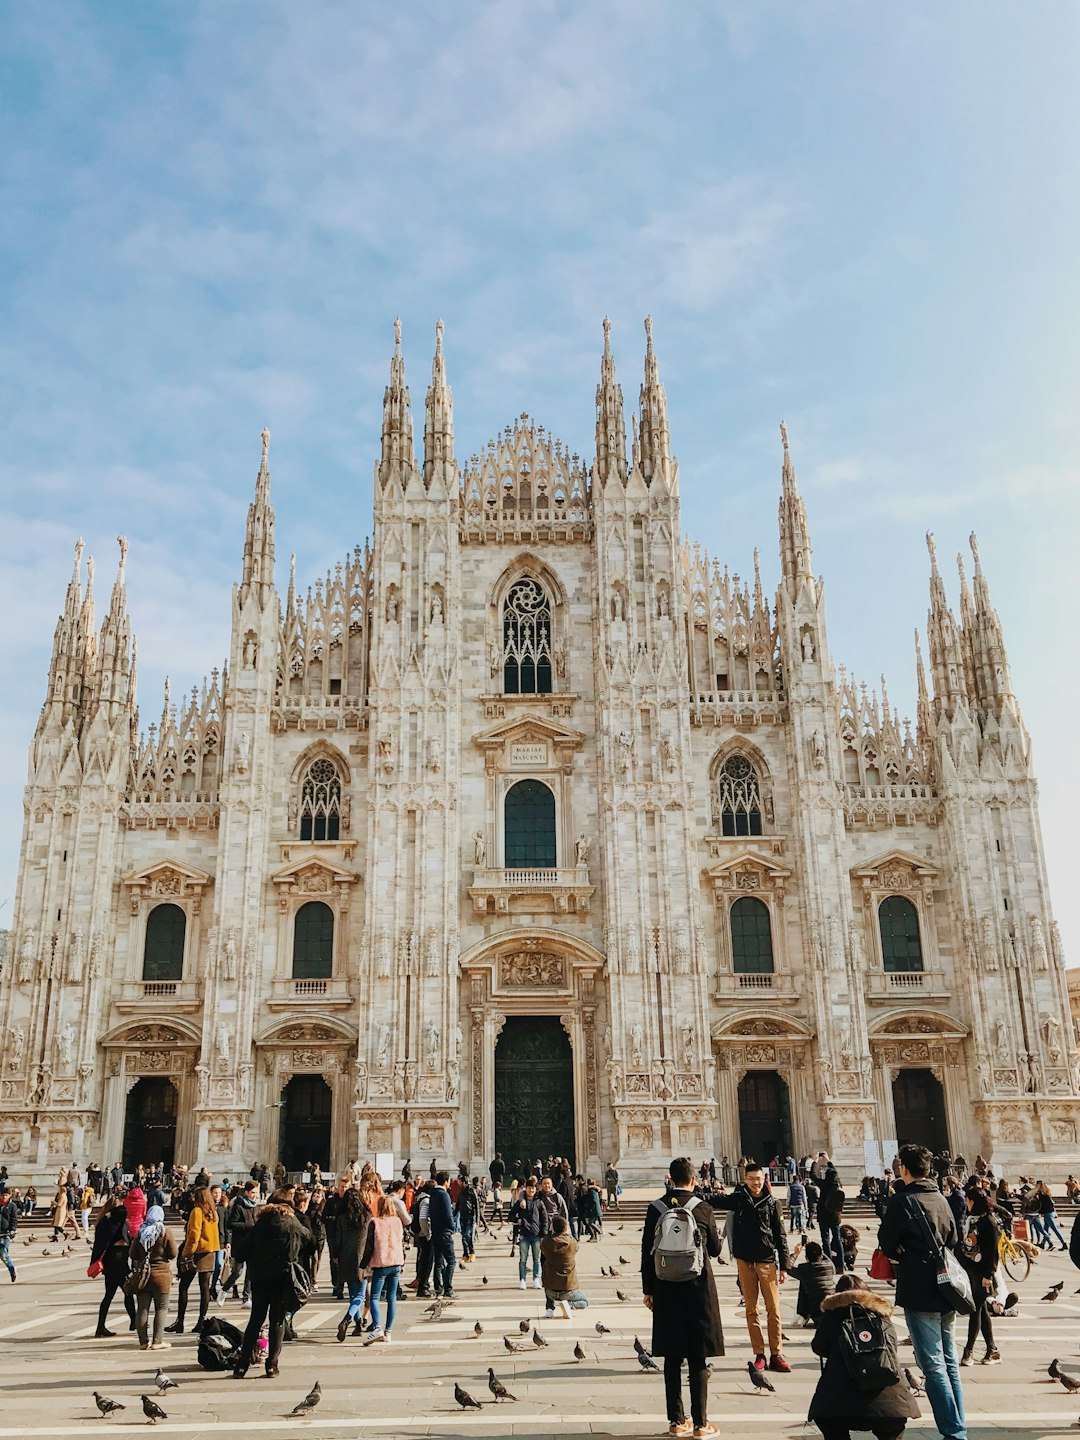 Landmark photo spot Milan Cathedral Duomo (Cathedral)